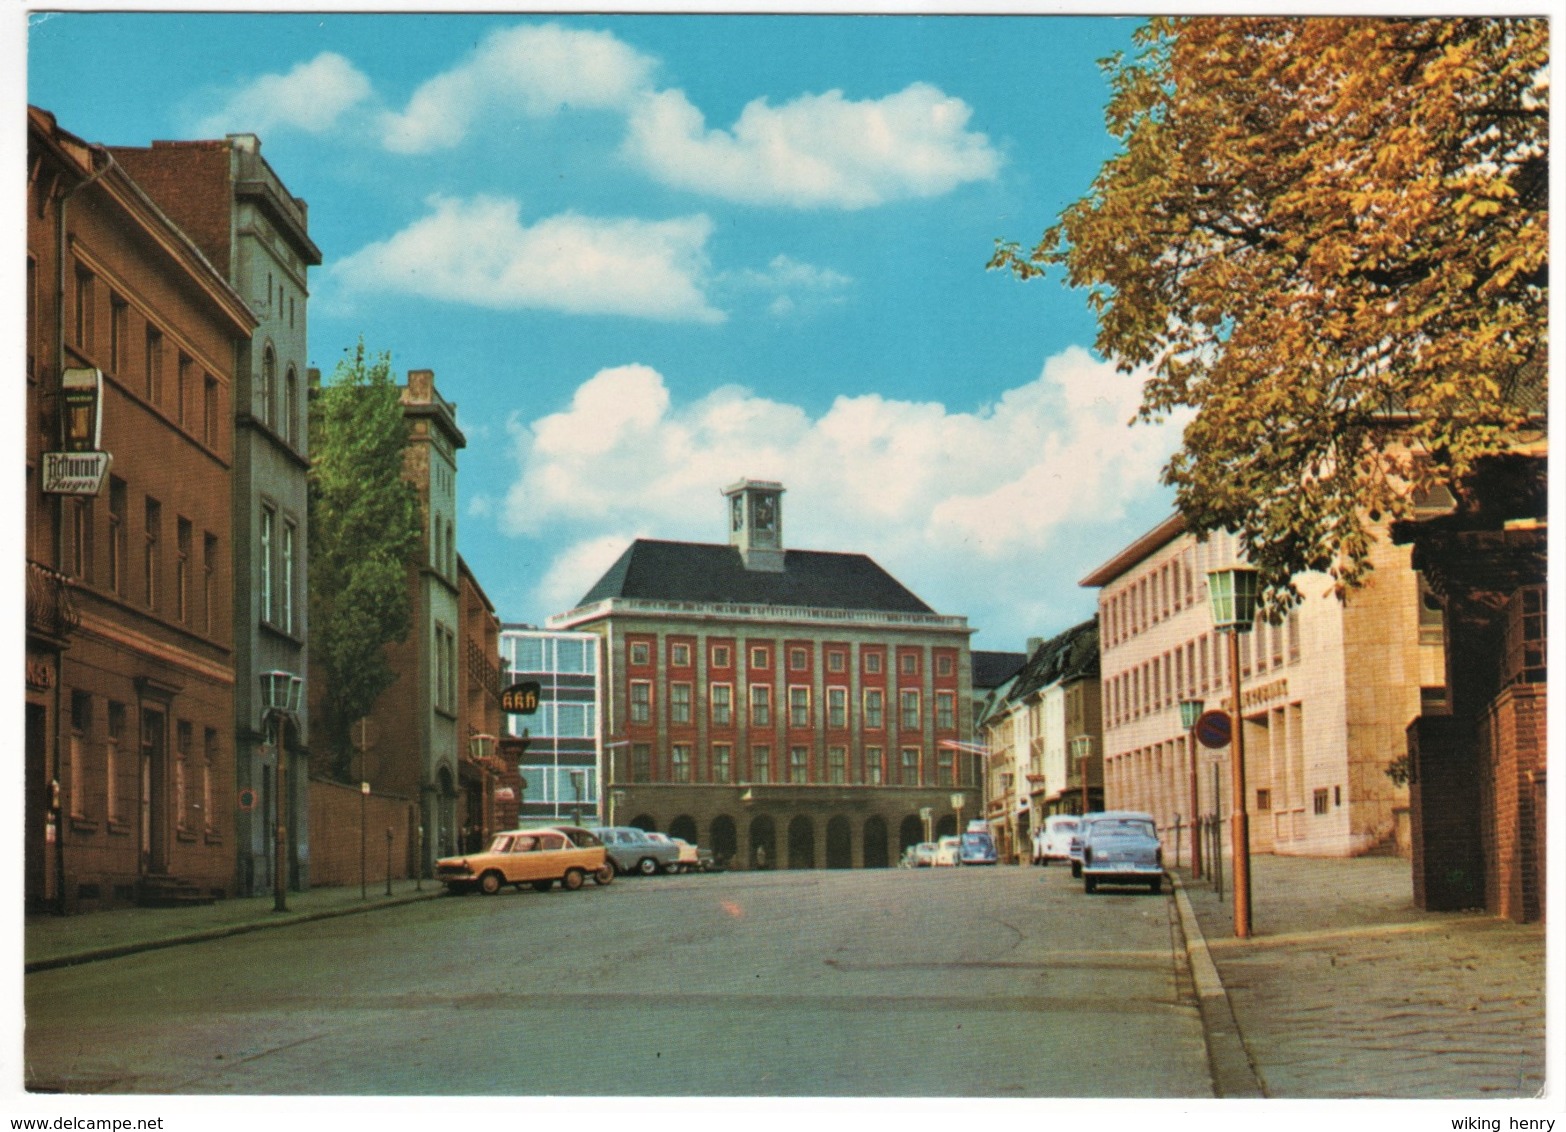 Neuss - Markt Und Rathaus - Neuss